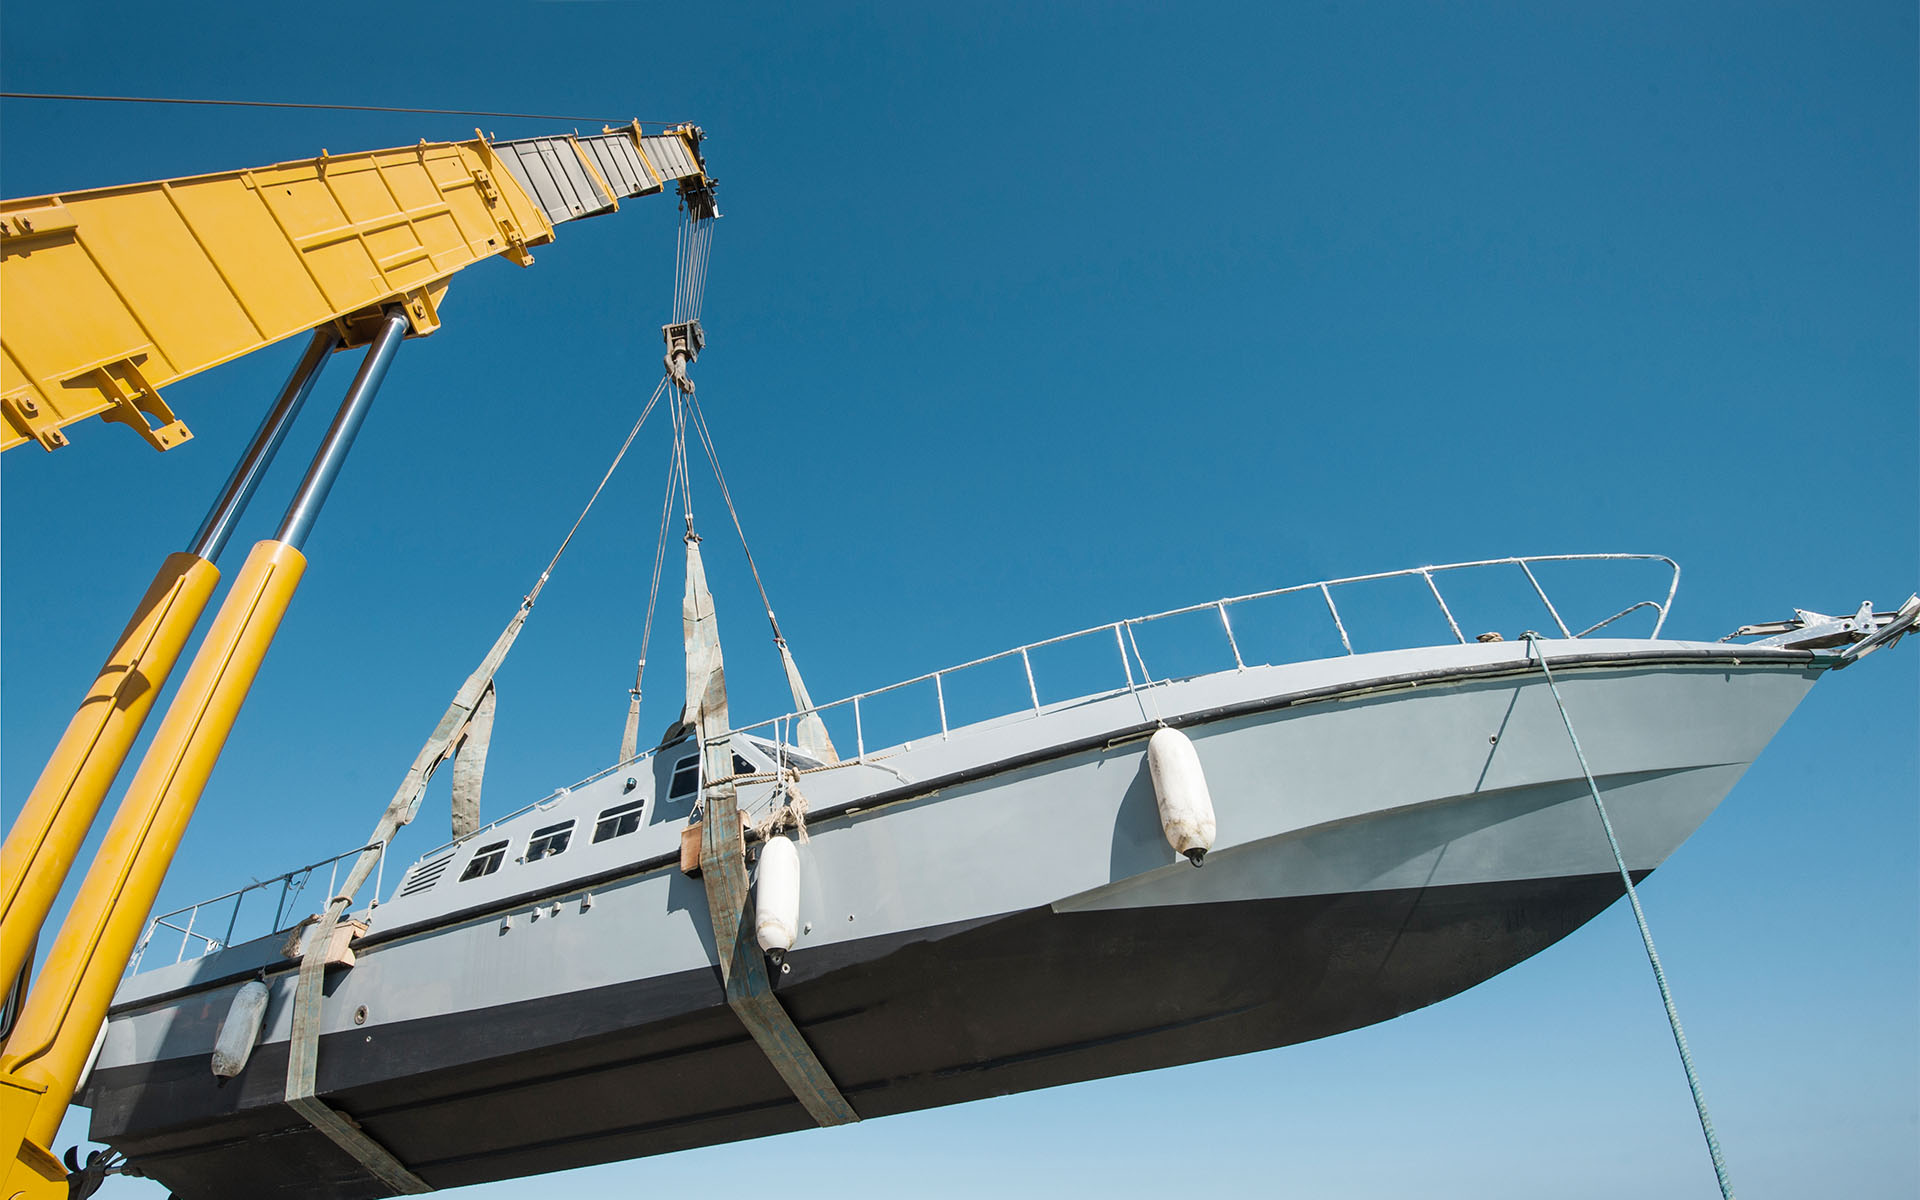 Yellow telescopic crane lifts a ship